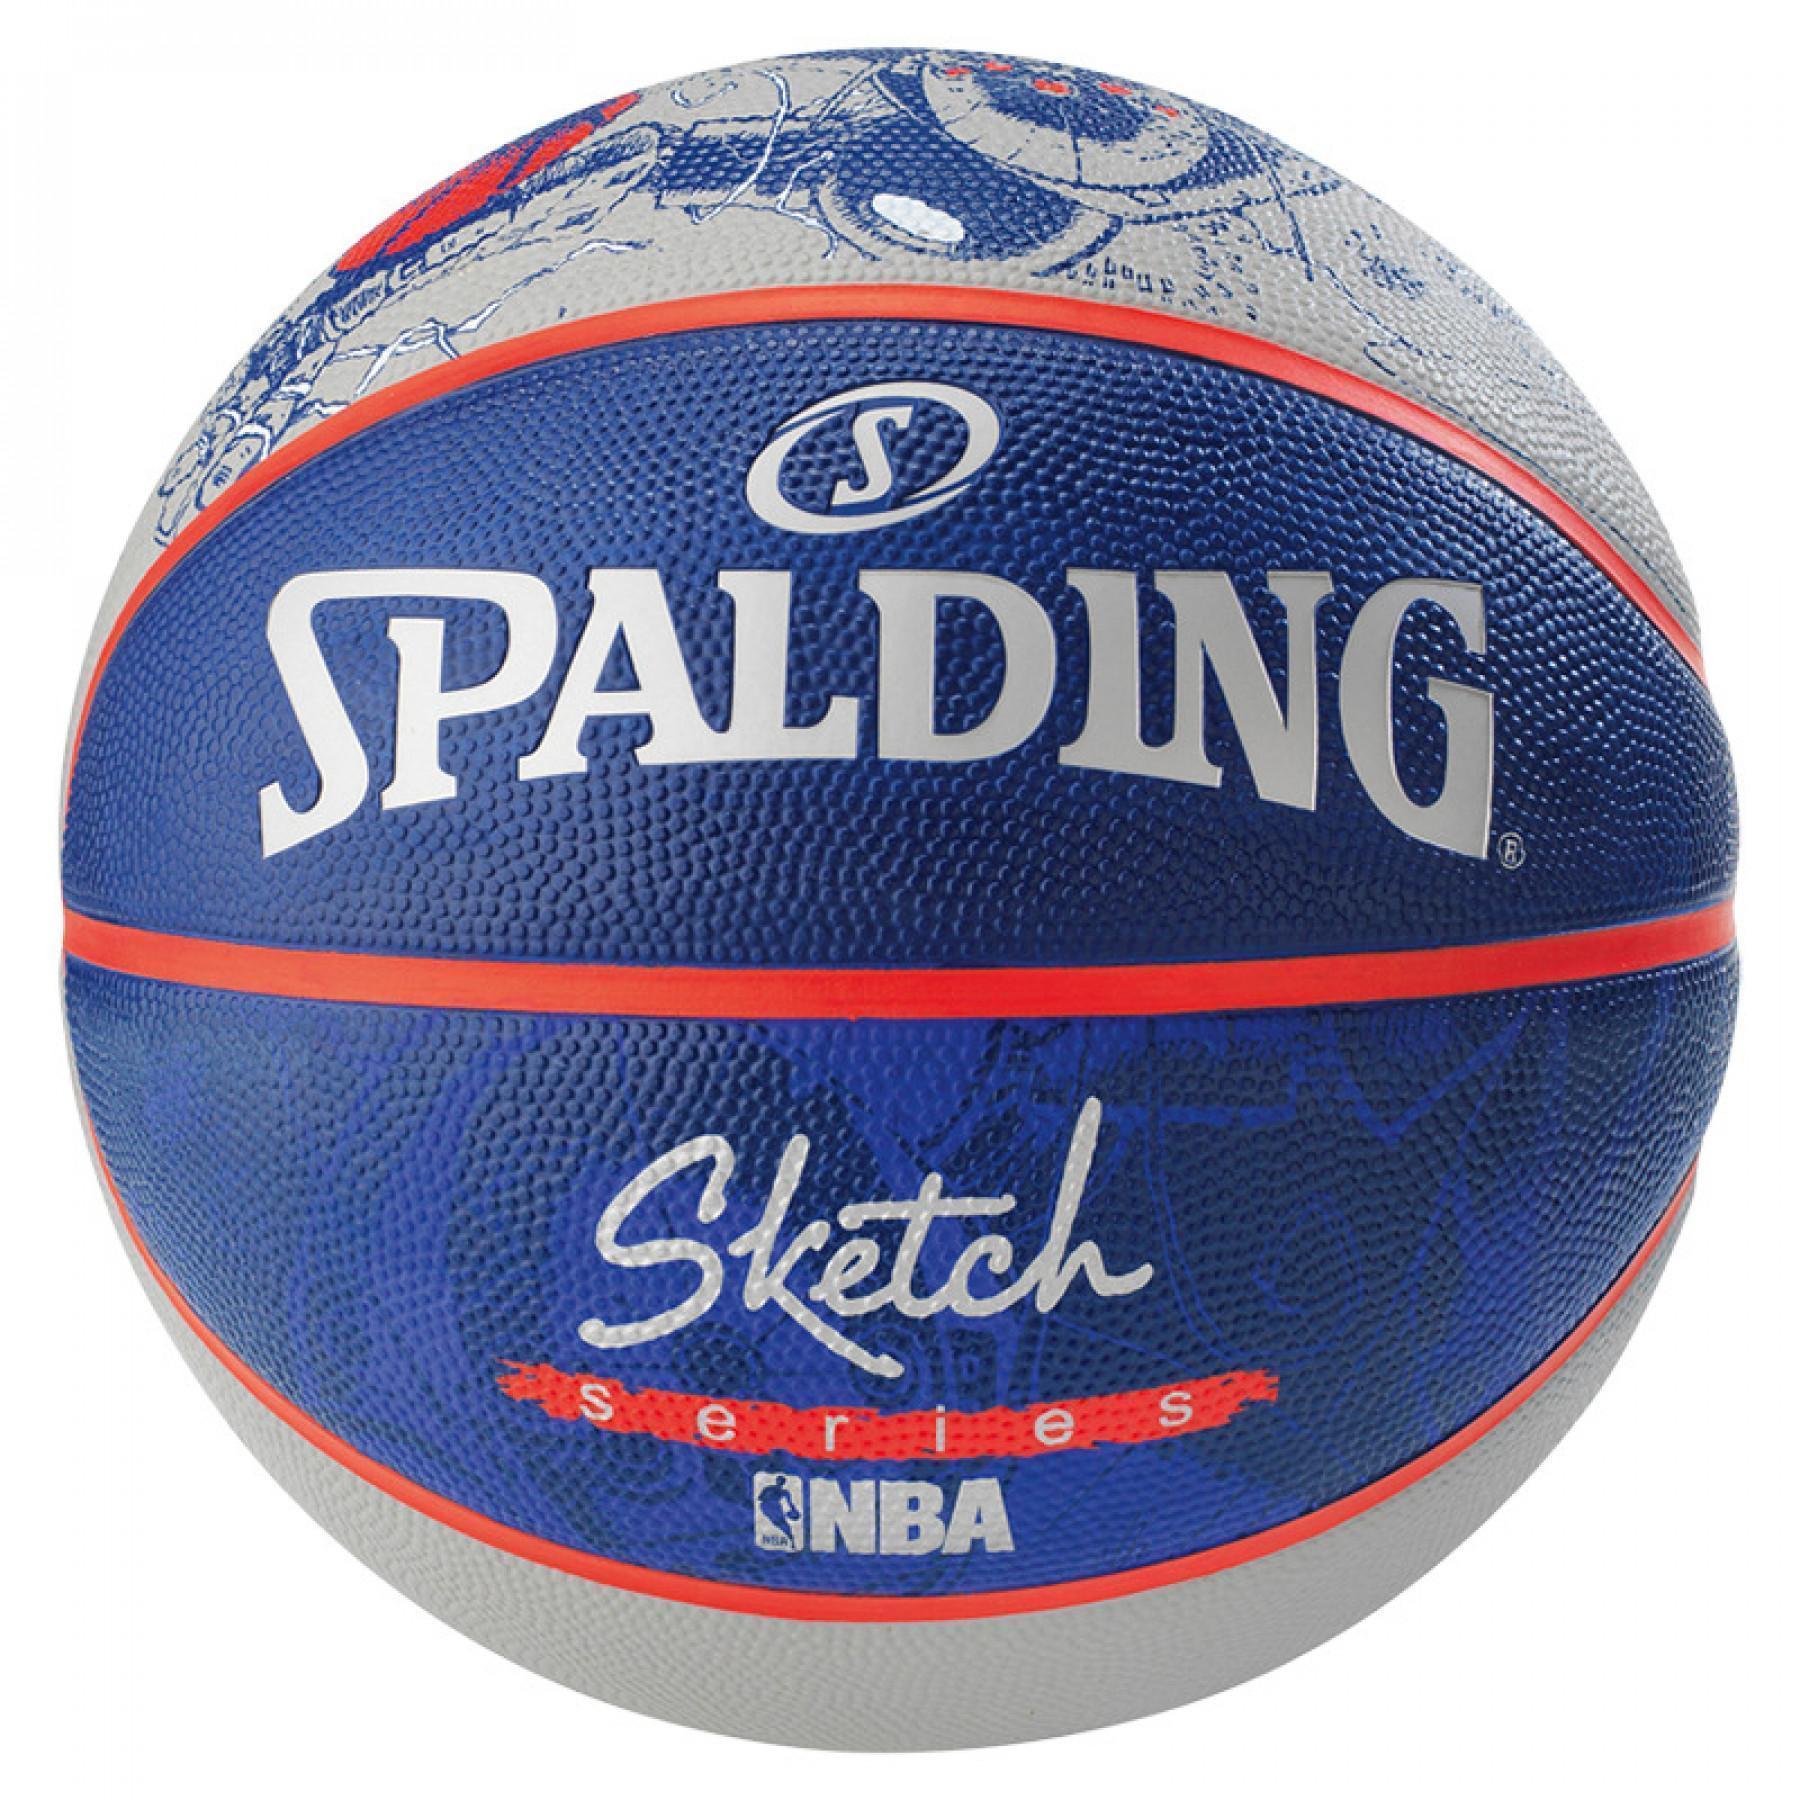 Ballon Spalding NBA Sketch Robot (83-677z)